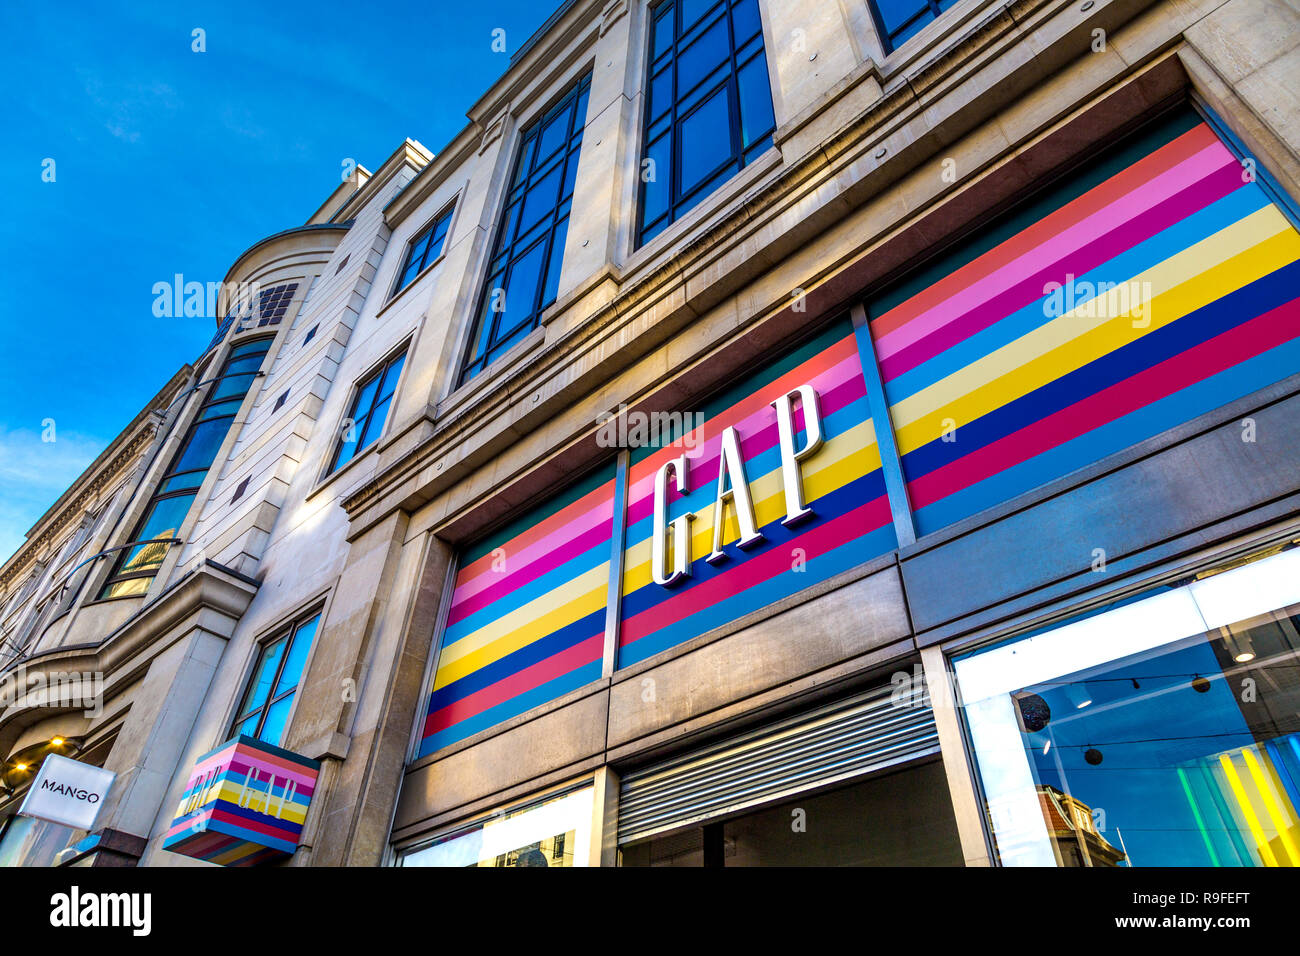 Delante de la tienda de GAP en Oxford Street con el logotipo de marca y los colores del arco iris de fondo, London, UK Foto de stock